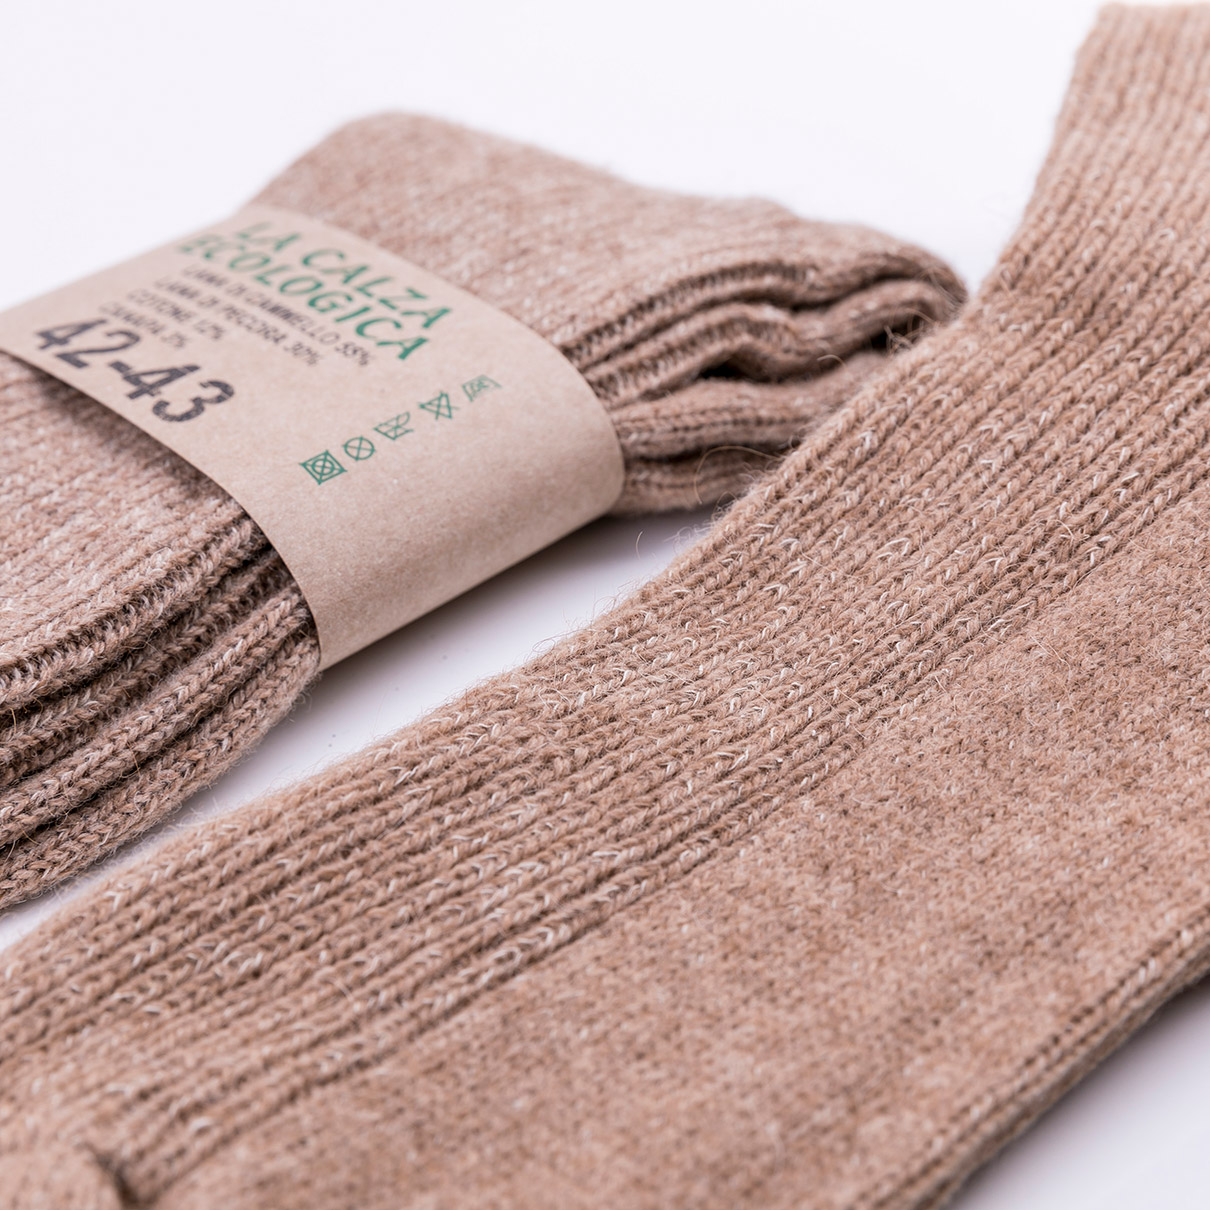 Scarpe Calzature donna Stivali Calze a maglia Made in Ucraina in lana di capra angora calze in 100% lana 